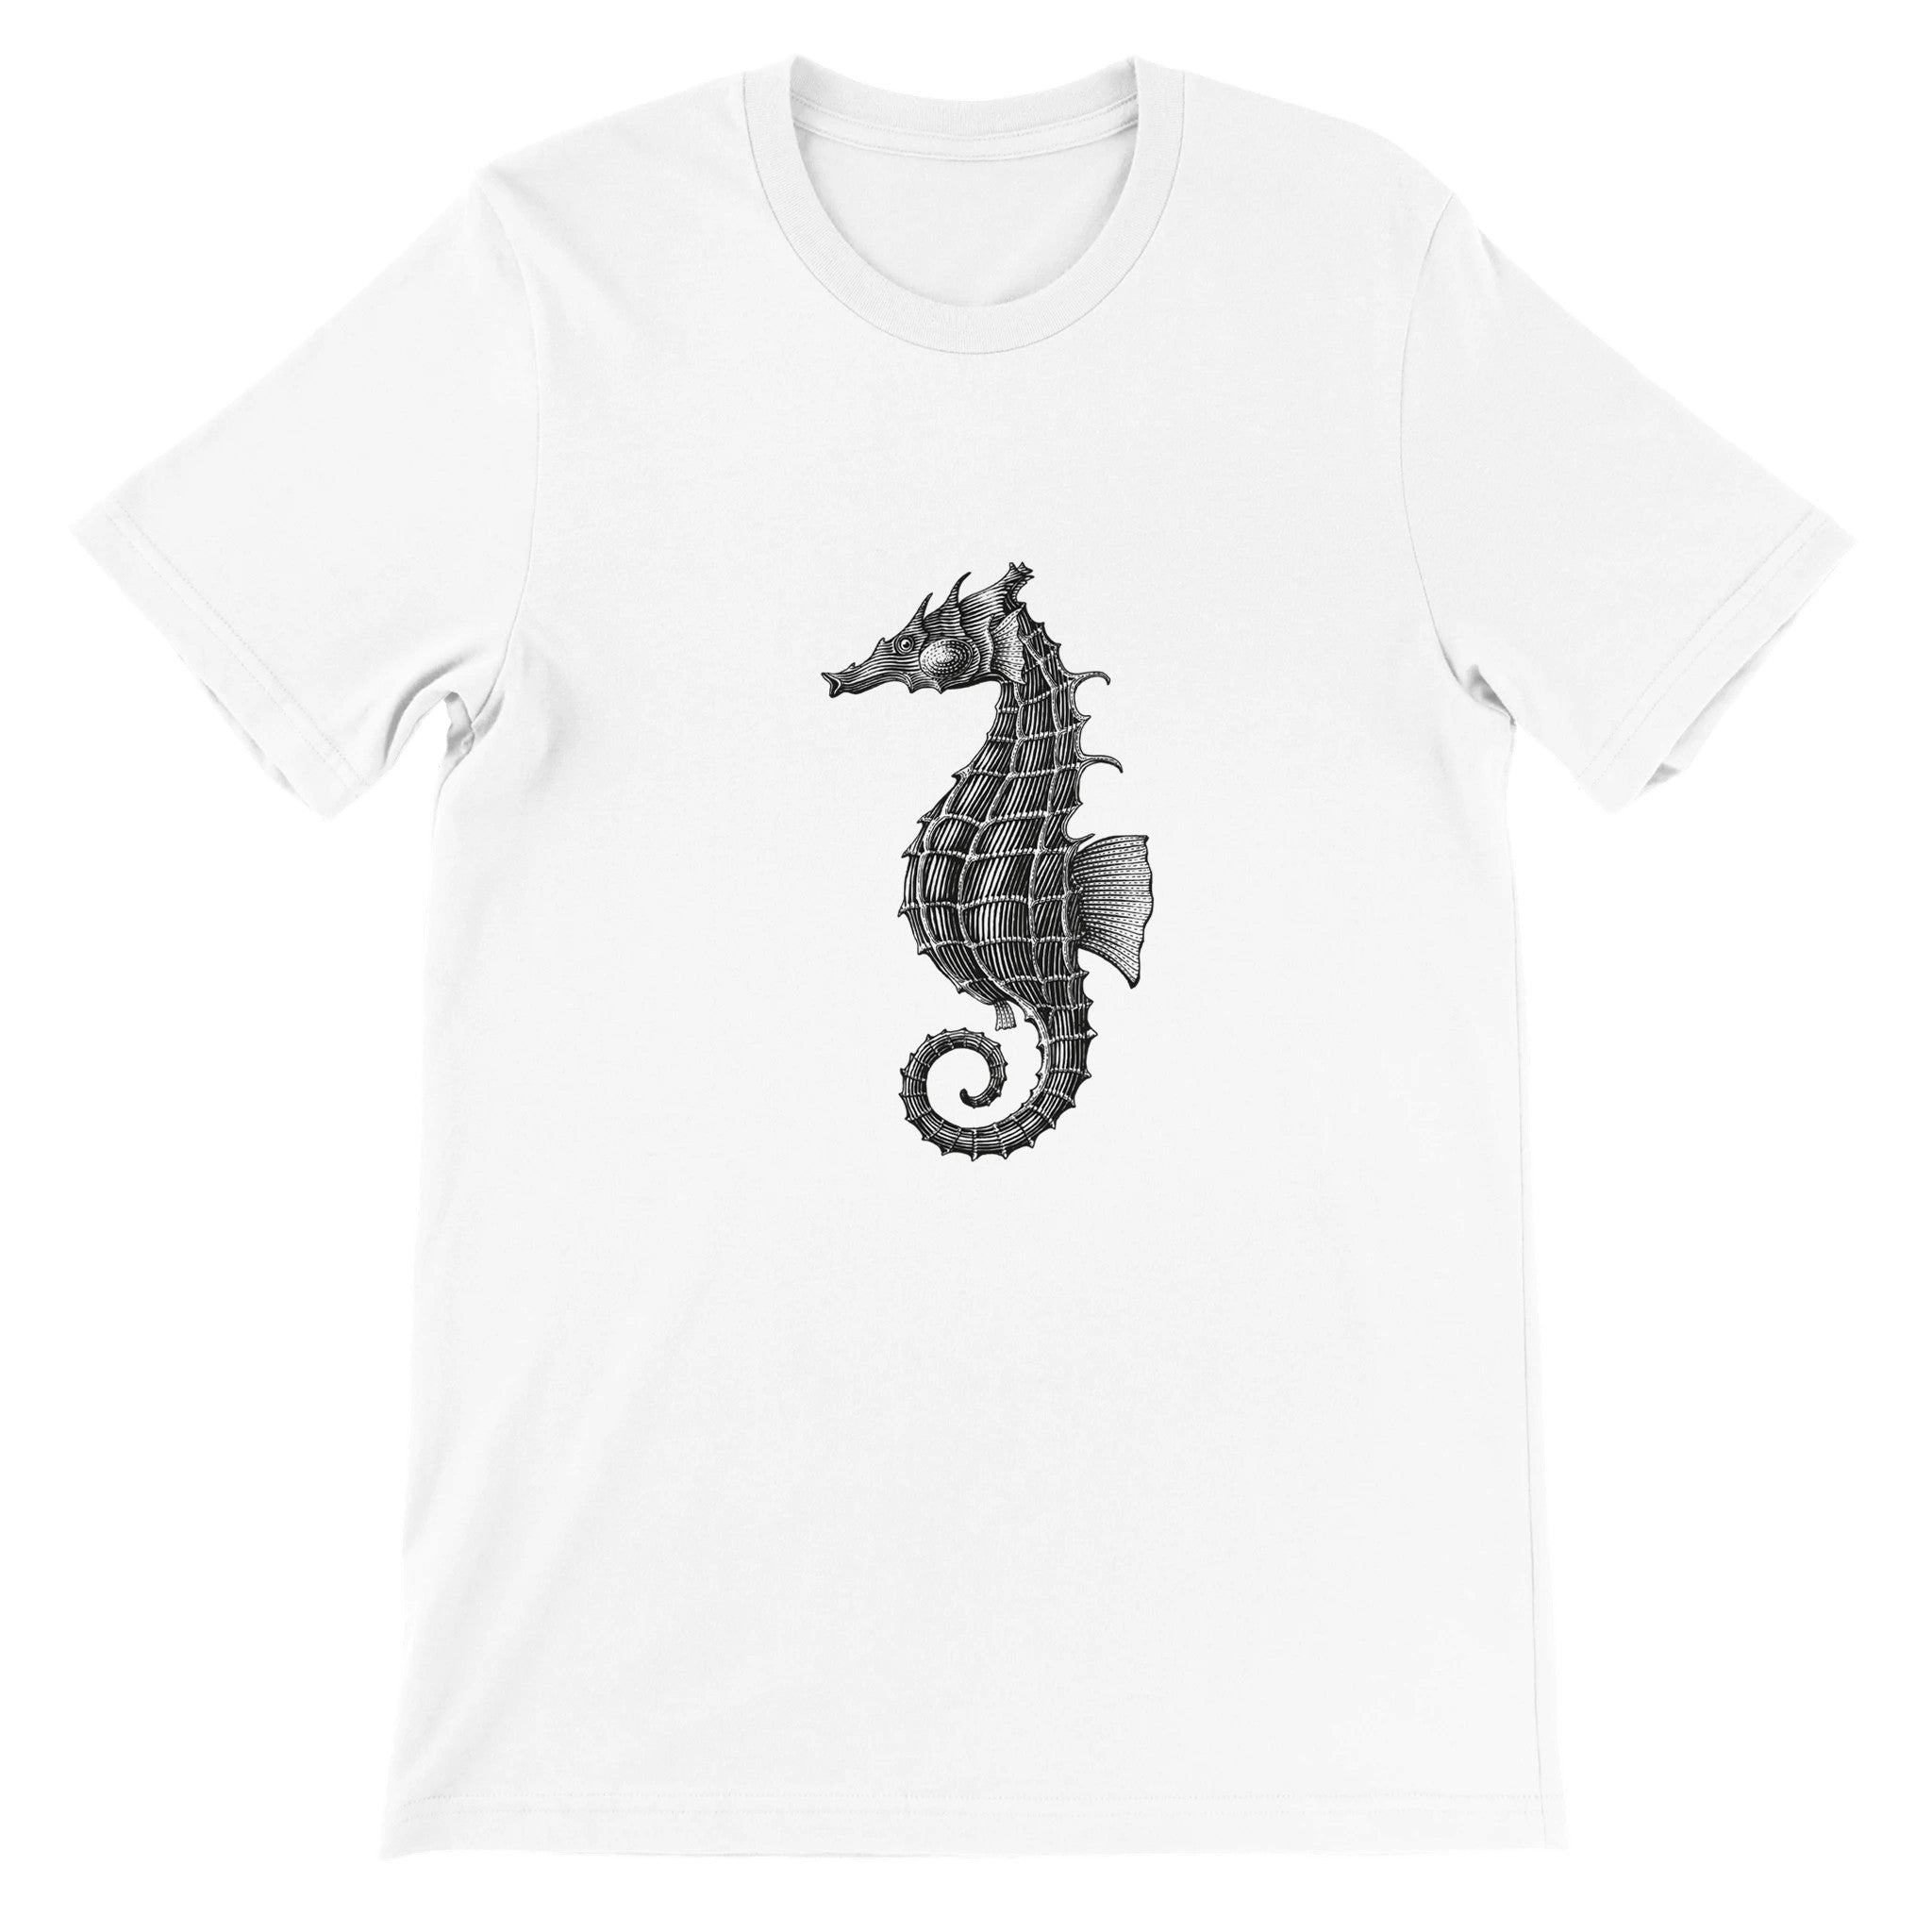 Seahorse Crewneck T-shirt - Optimalprint